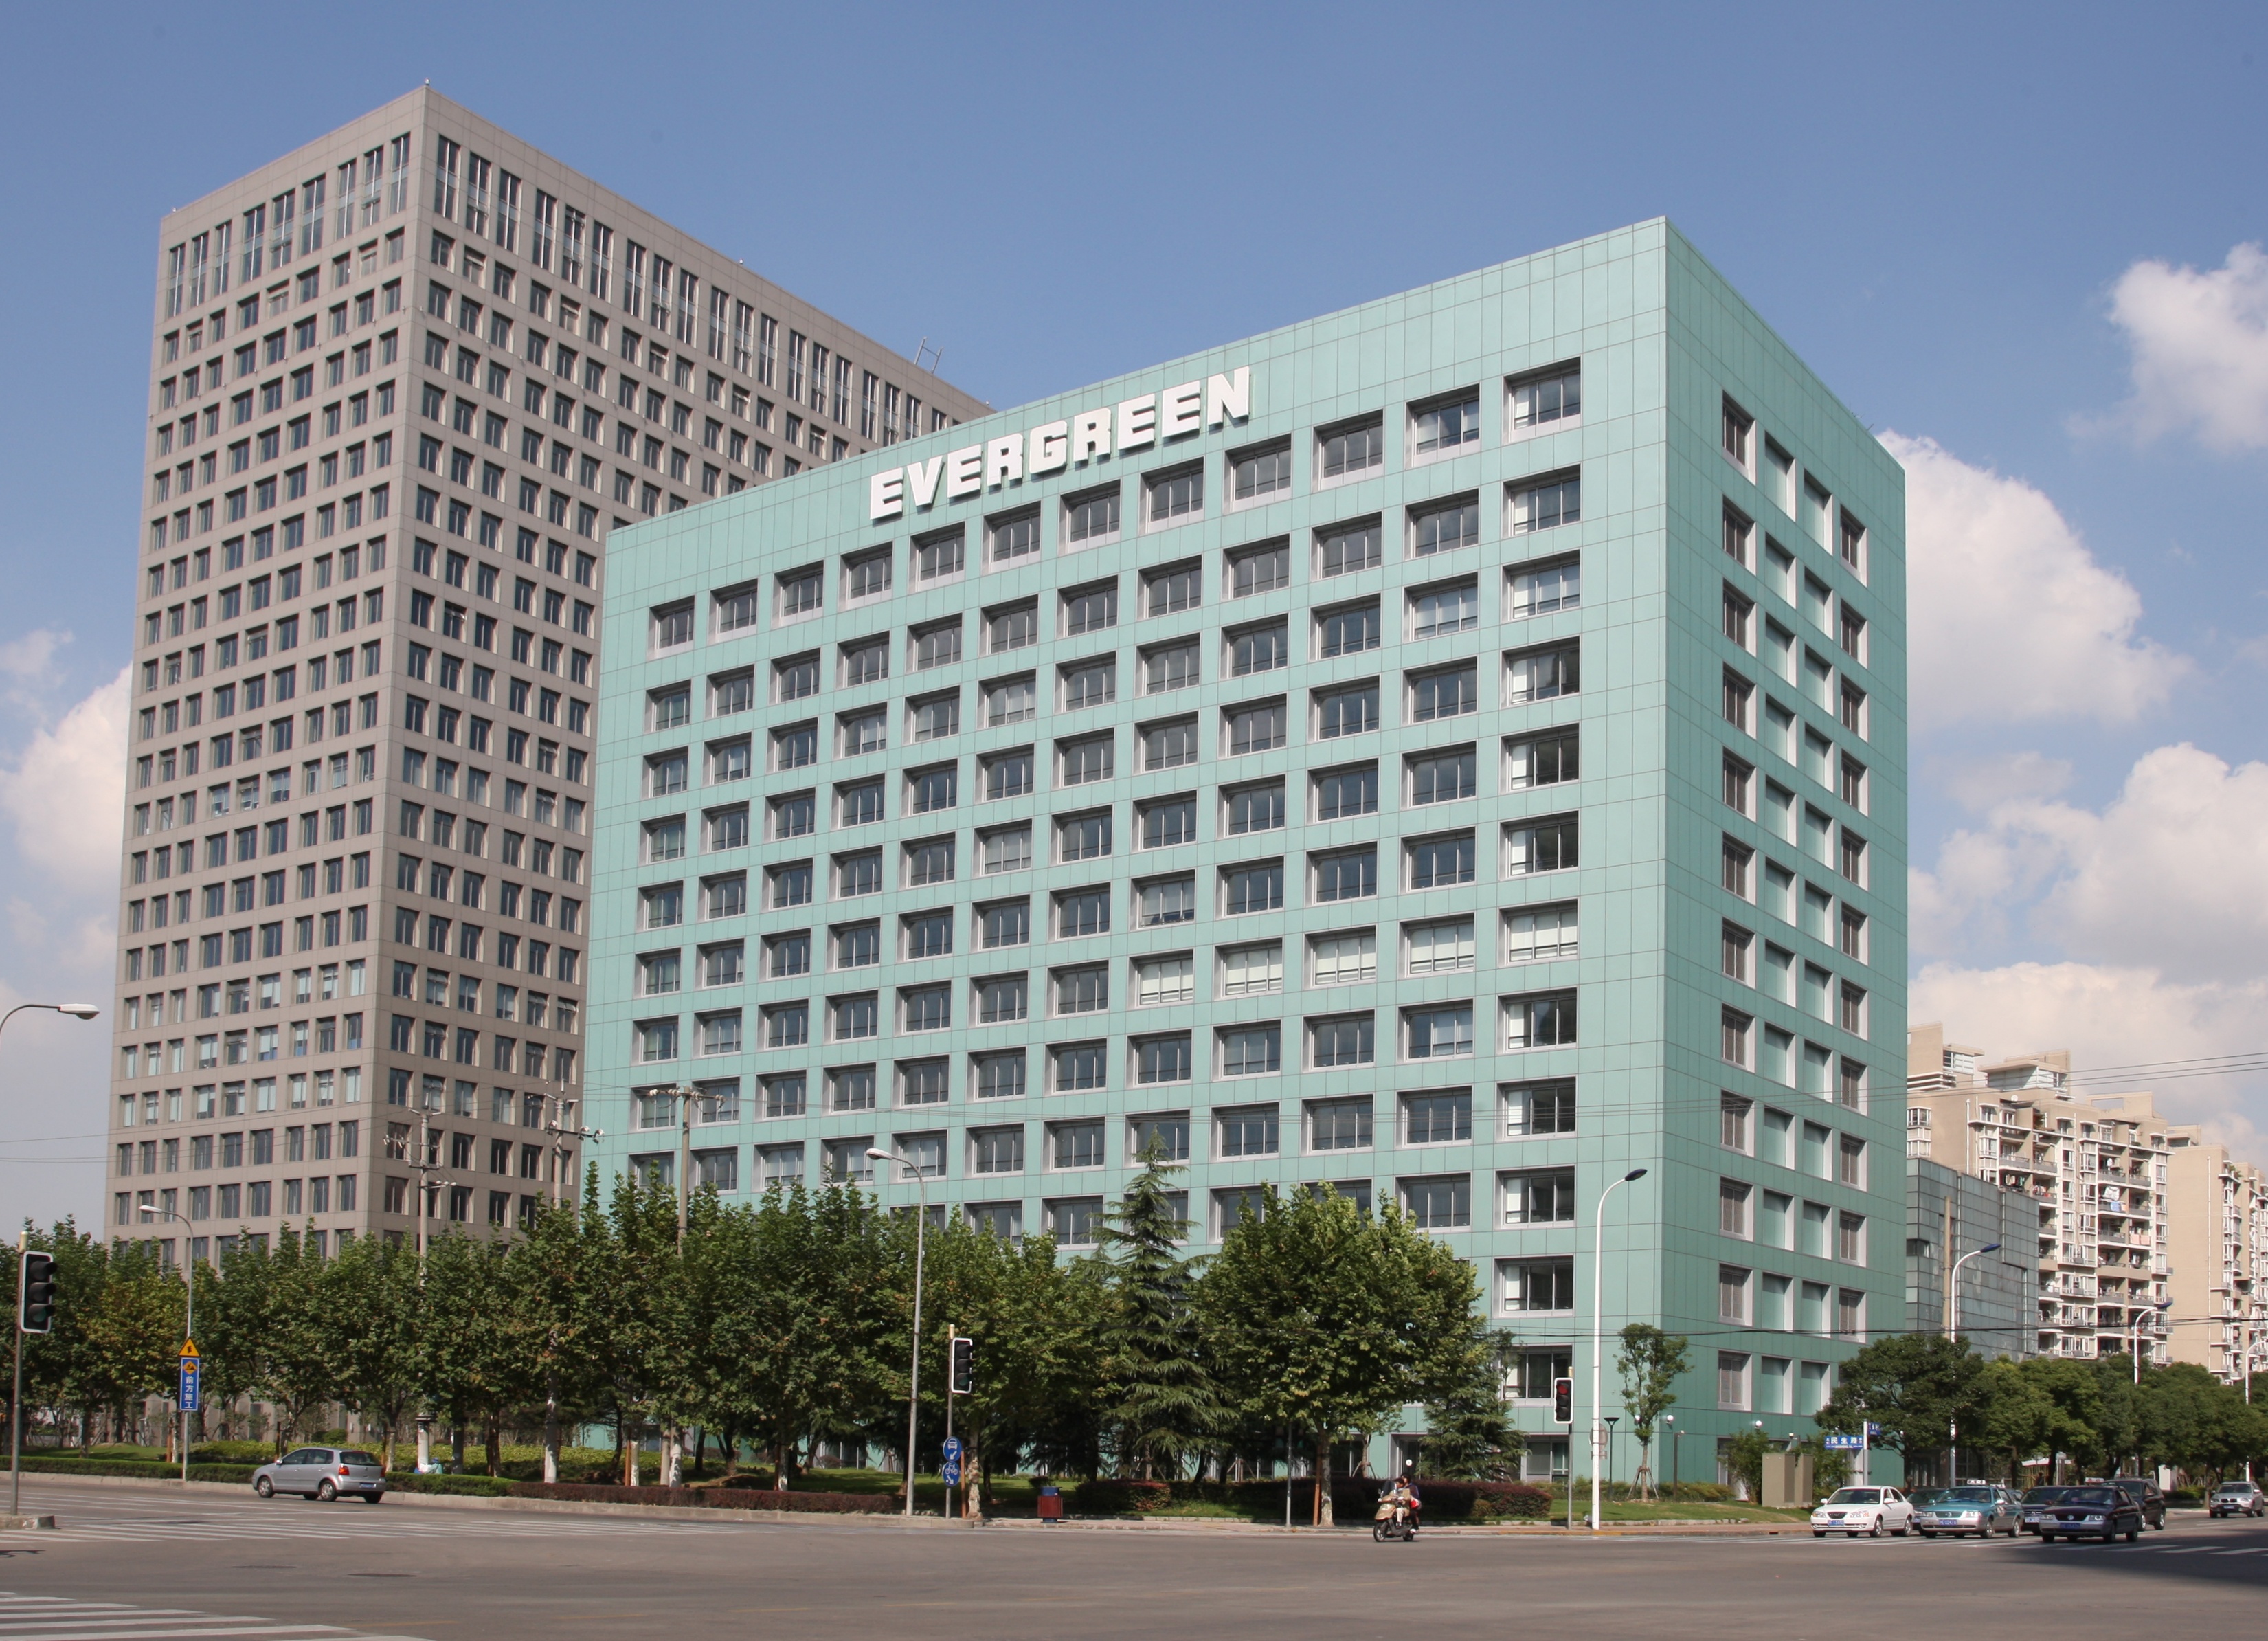 长荣集团始自於长荣海运股份有限公司,创立于1968年9月1日,发展